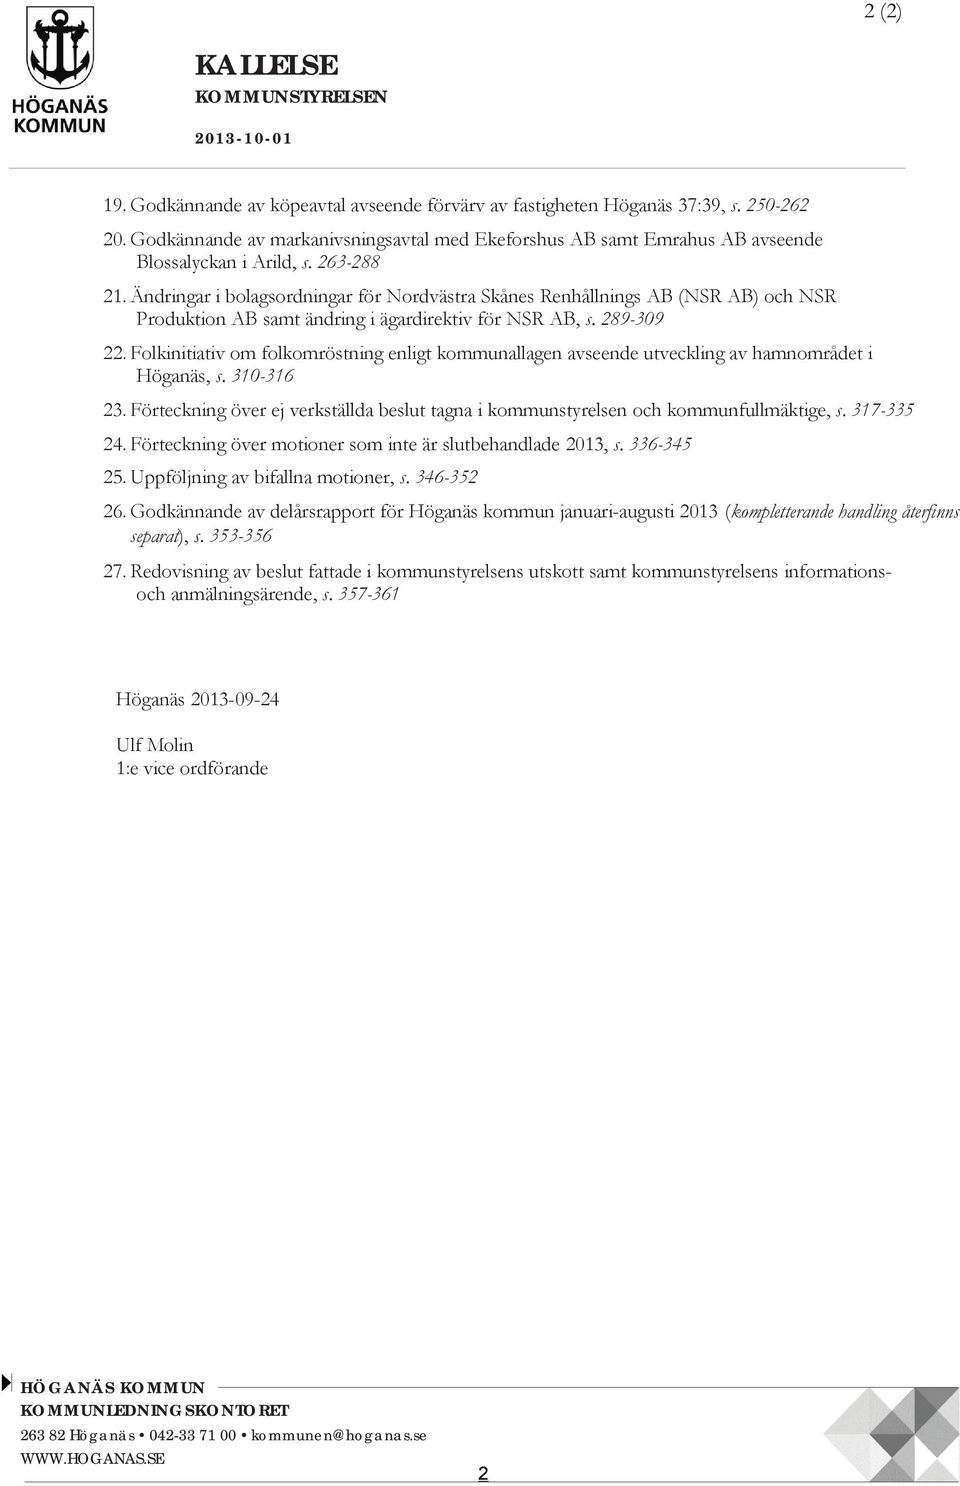 Ändringar i bolagsordningar för Nordvästra Skånes Renhållnings AB (NSR AB) och NSR Produktion AB samt ändring i ägardirektiv för NSR AB 22.